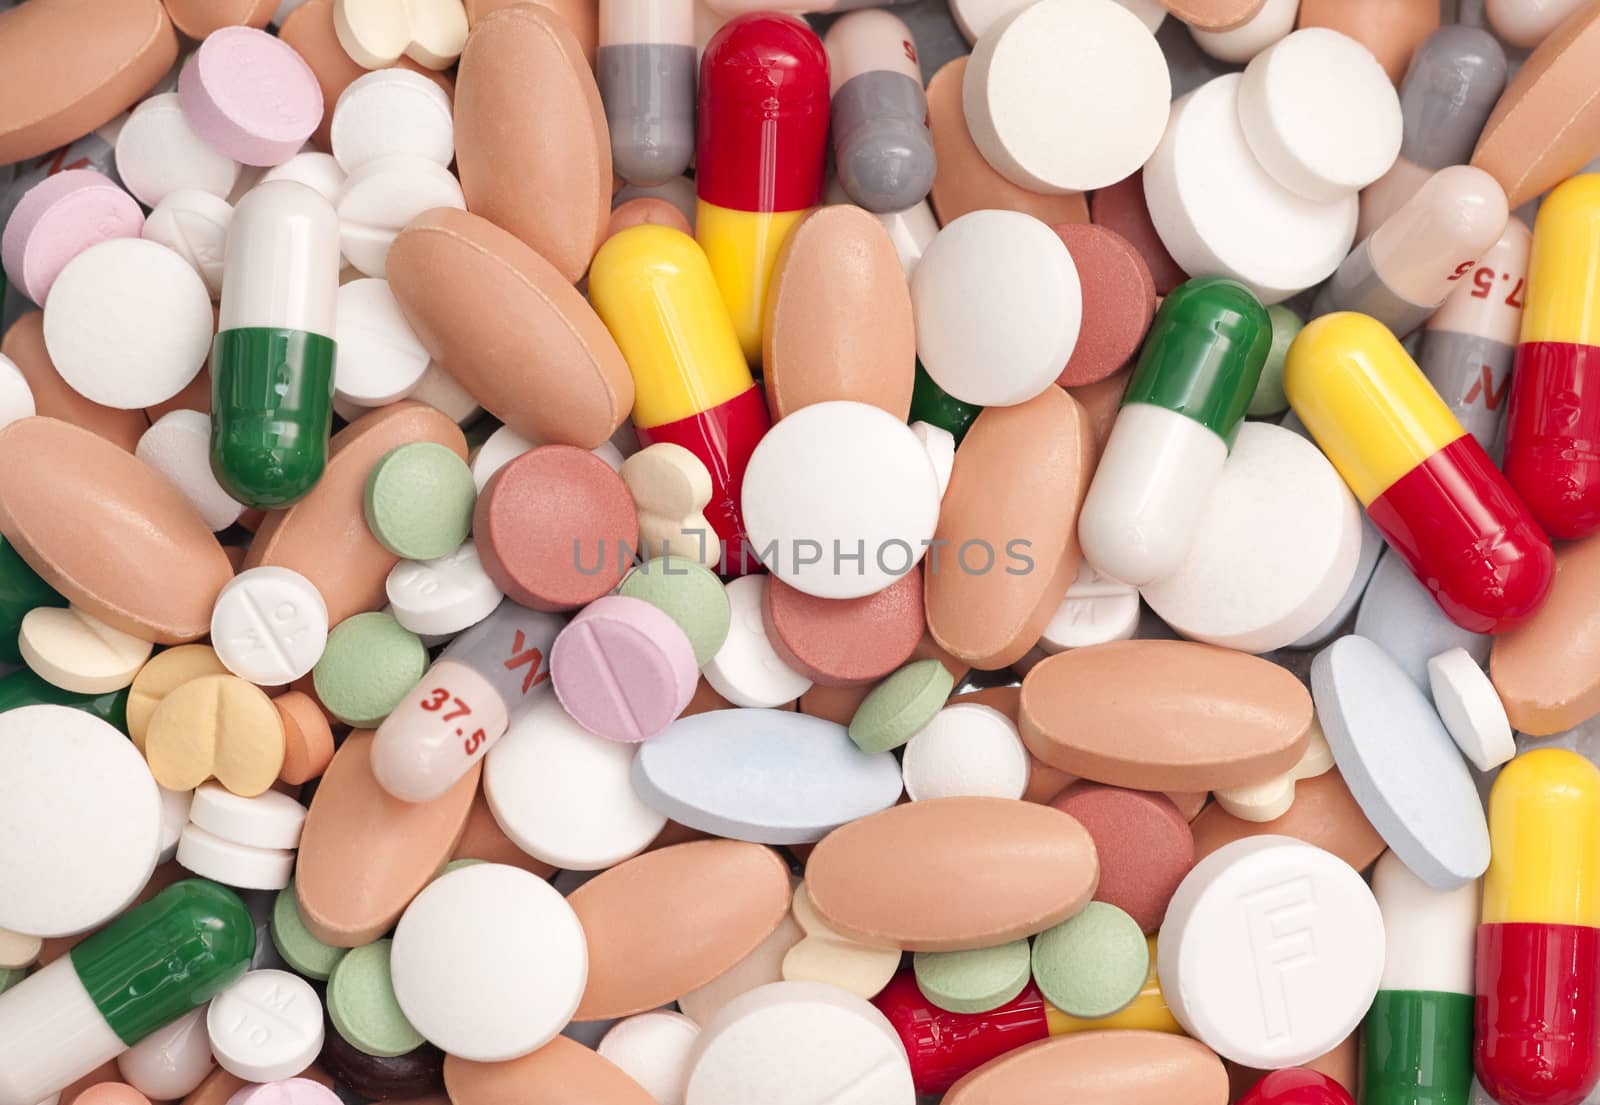 Capsules and Pills by rodrigobellizzi